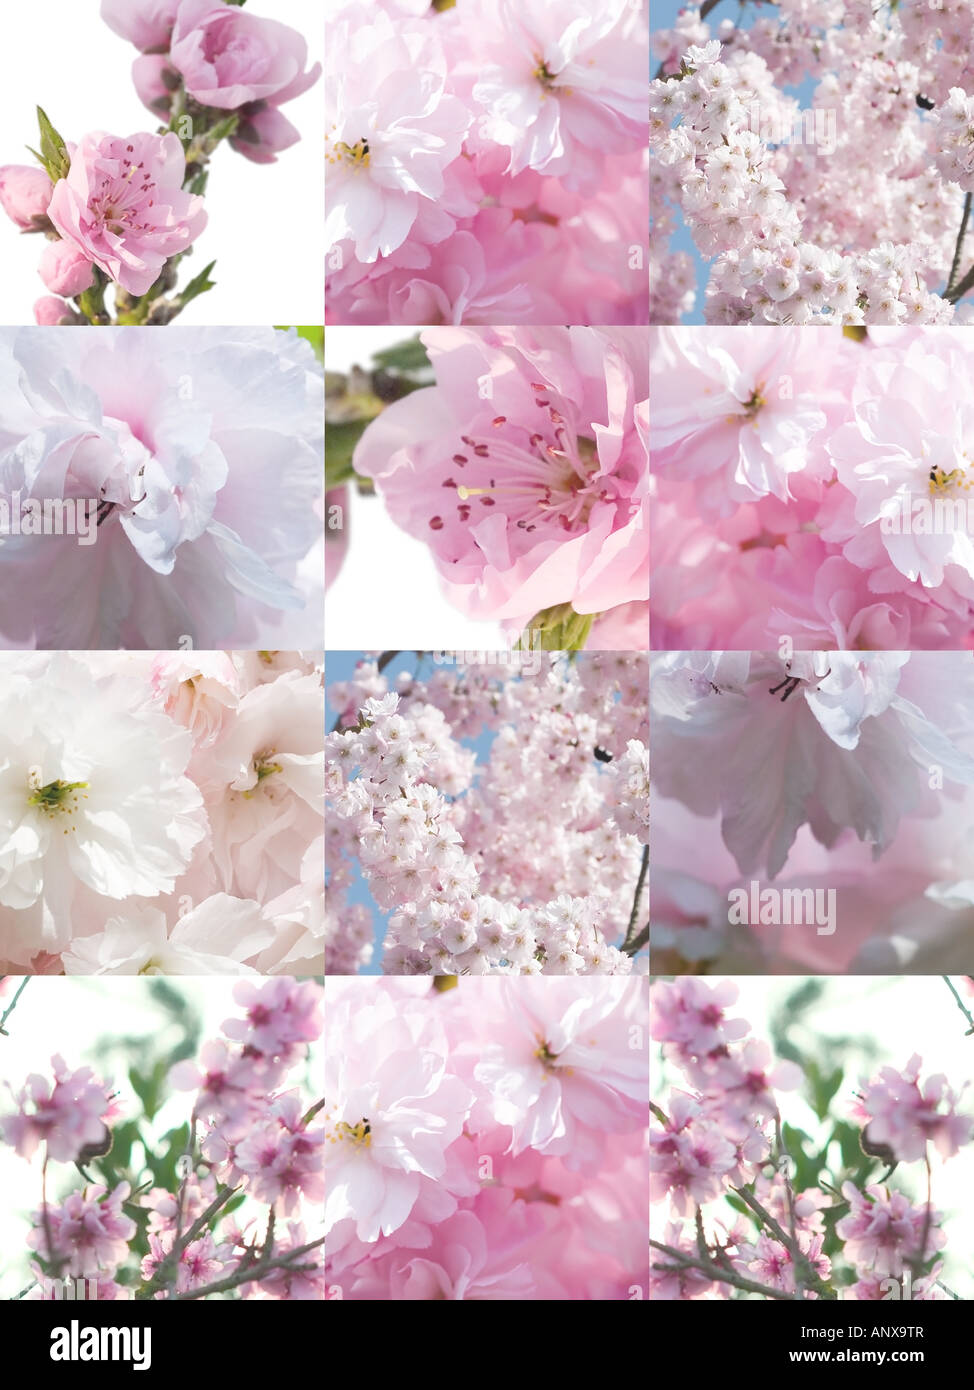 Eine Vielzahl von Blüten - Schritt und wiederholen Sie Illustration Fotodesign Stockfoto